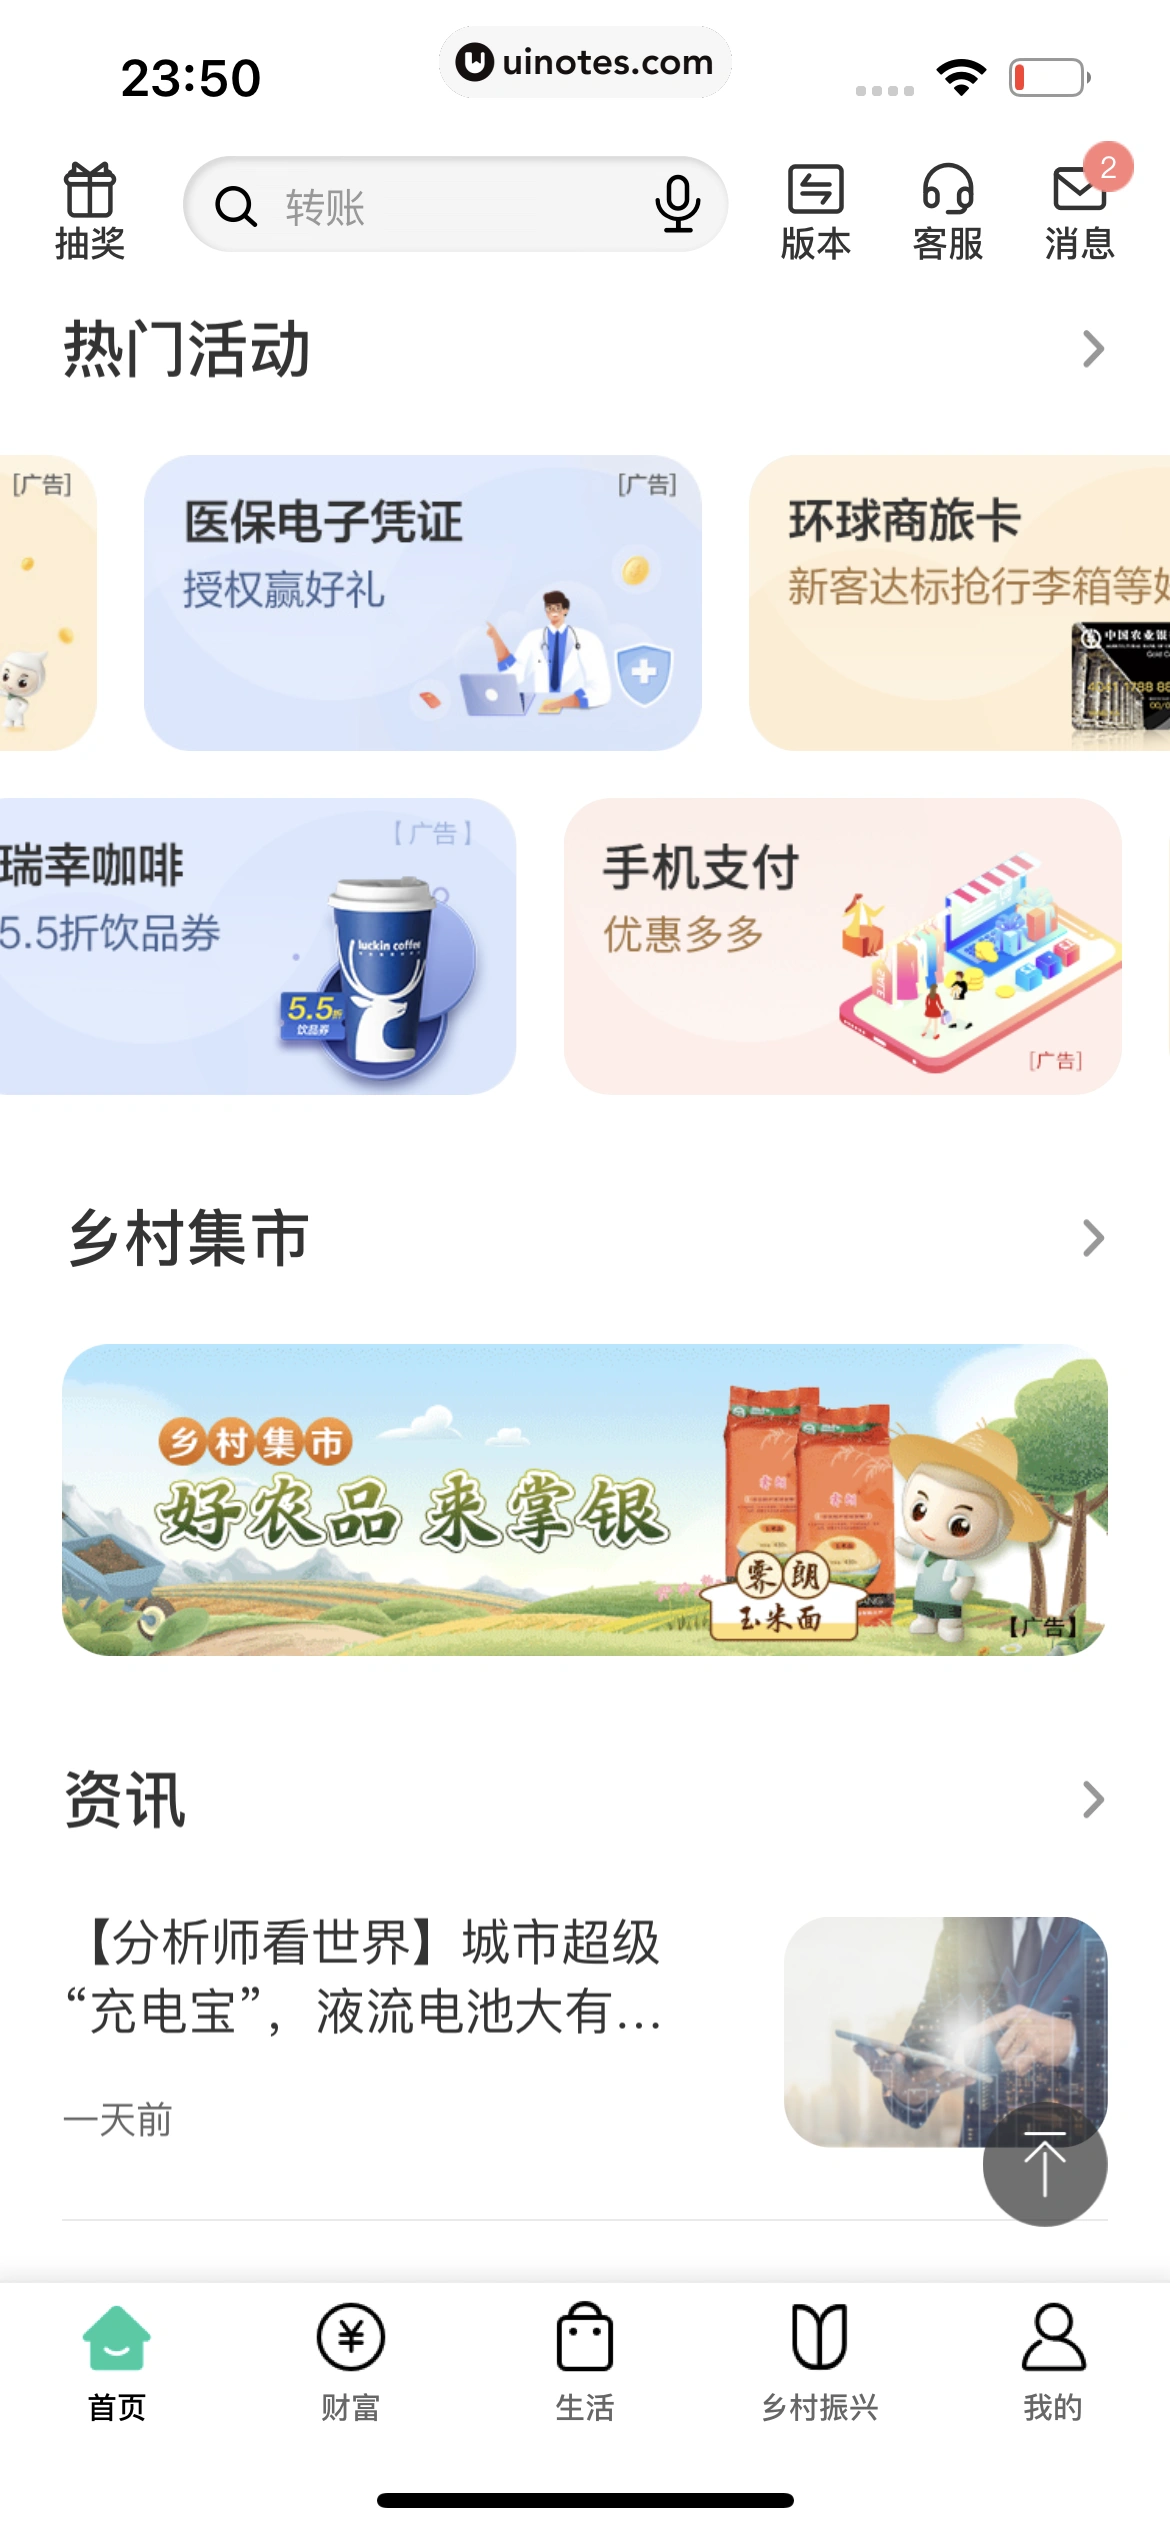 中国农业银行 App 截图 027 - UI Notes